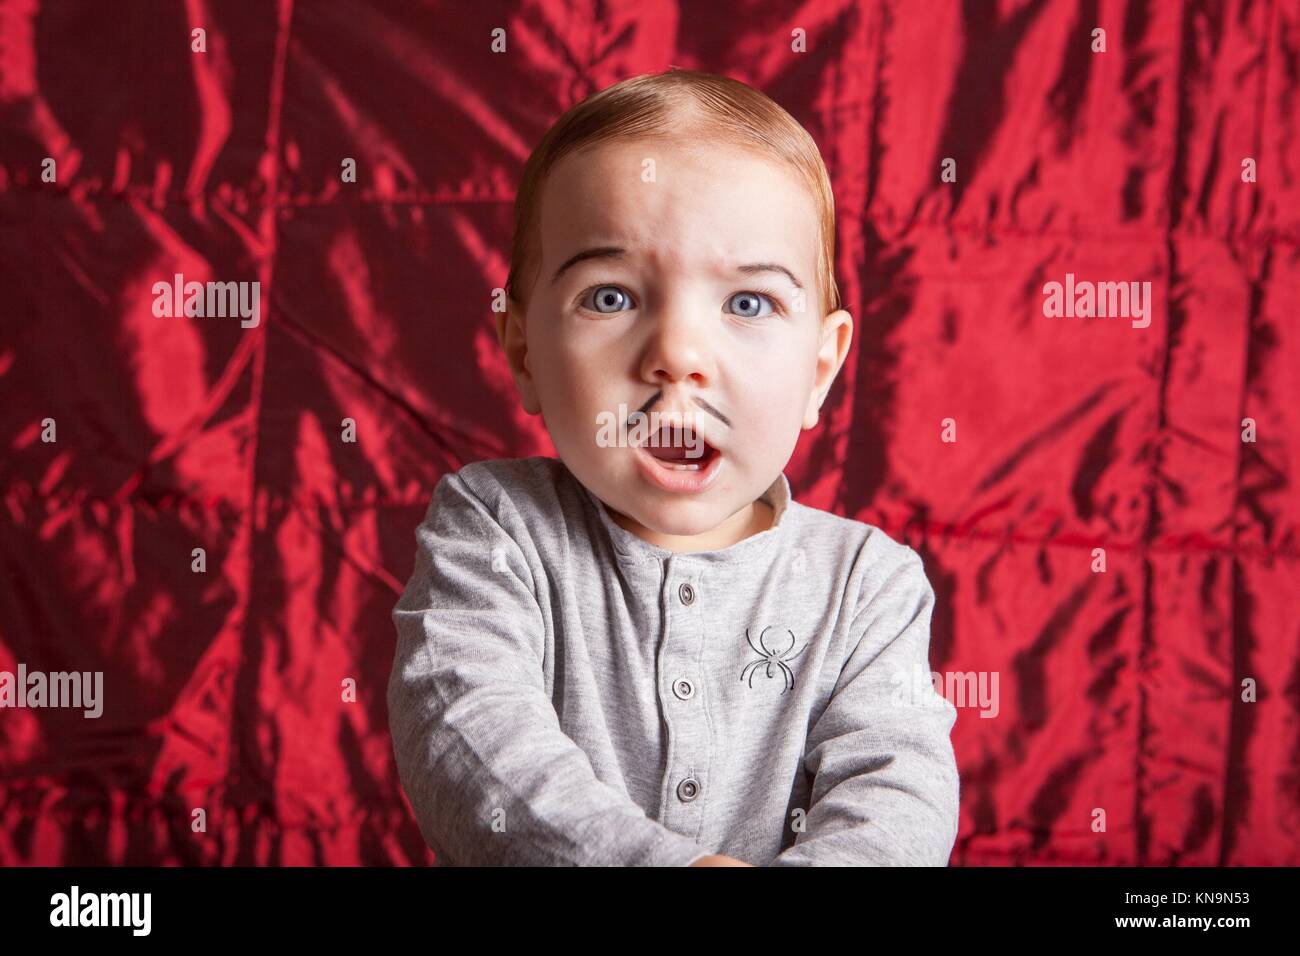 Porträt eines kleinen Jungen verkleiden sich für Halloween Party. Er hat einen überraschten Ausdruck. Stockfoto